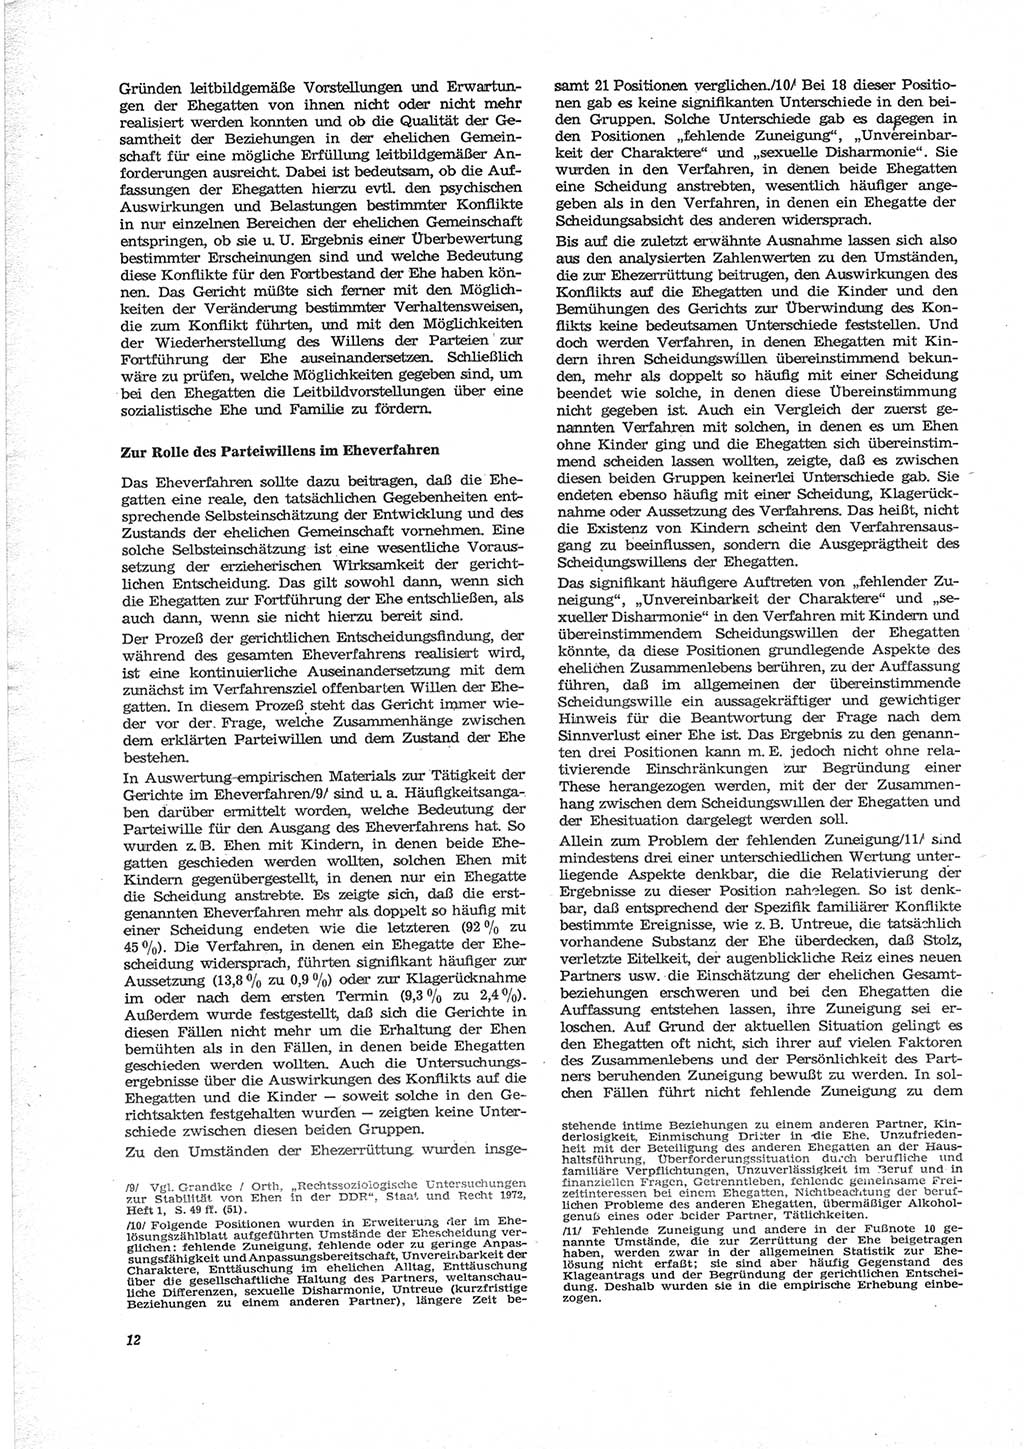 Neue Justiz (NJ), Zeitschrift für Recht und Rechtswissenschaft [Deutsche Demokratische Republik (DDR)], 28. Jahrgang 1974, Seite 12 (NJ DDR 1974, S. 12)